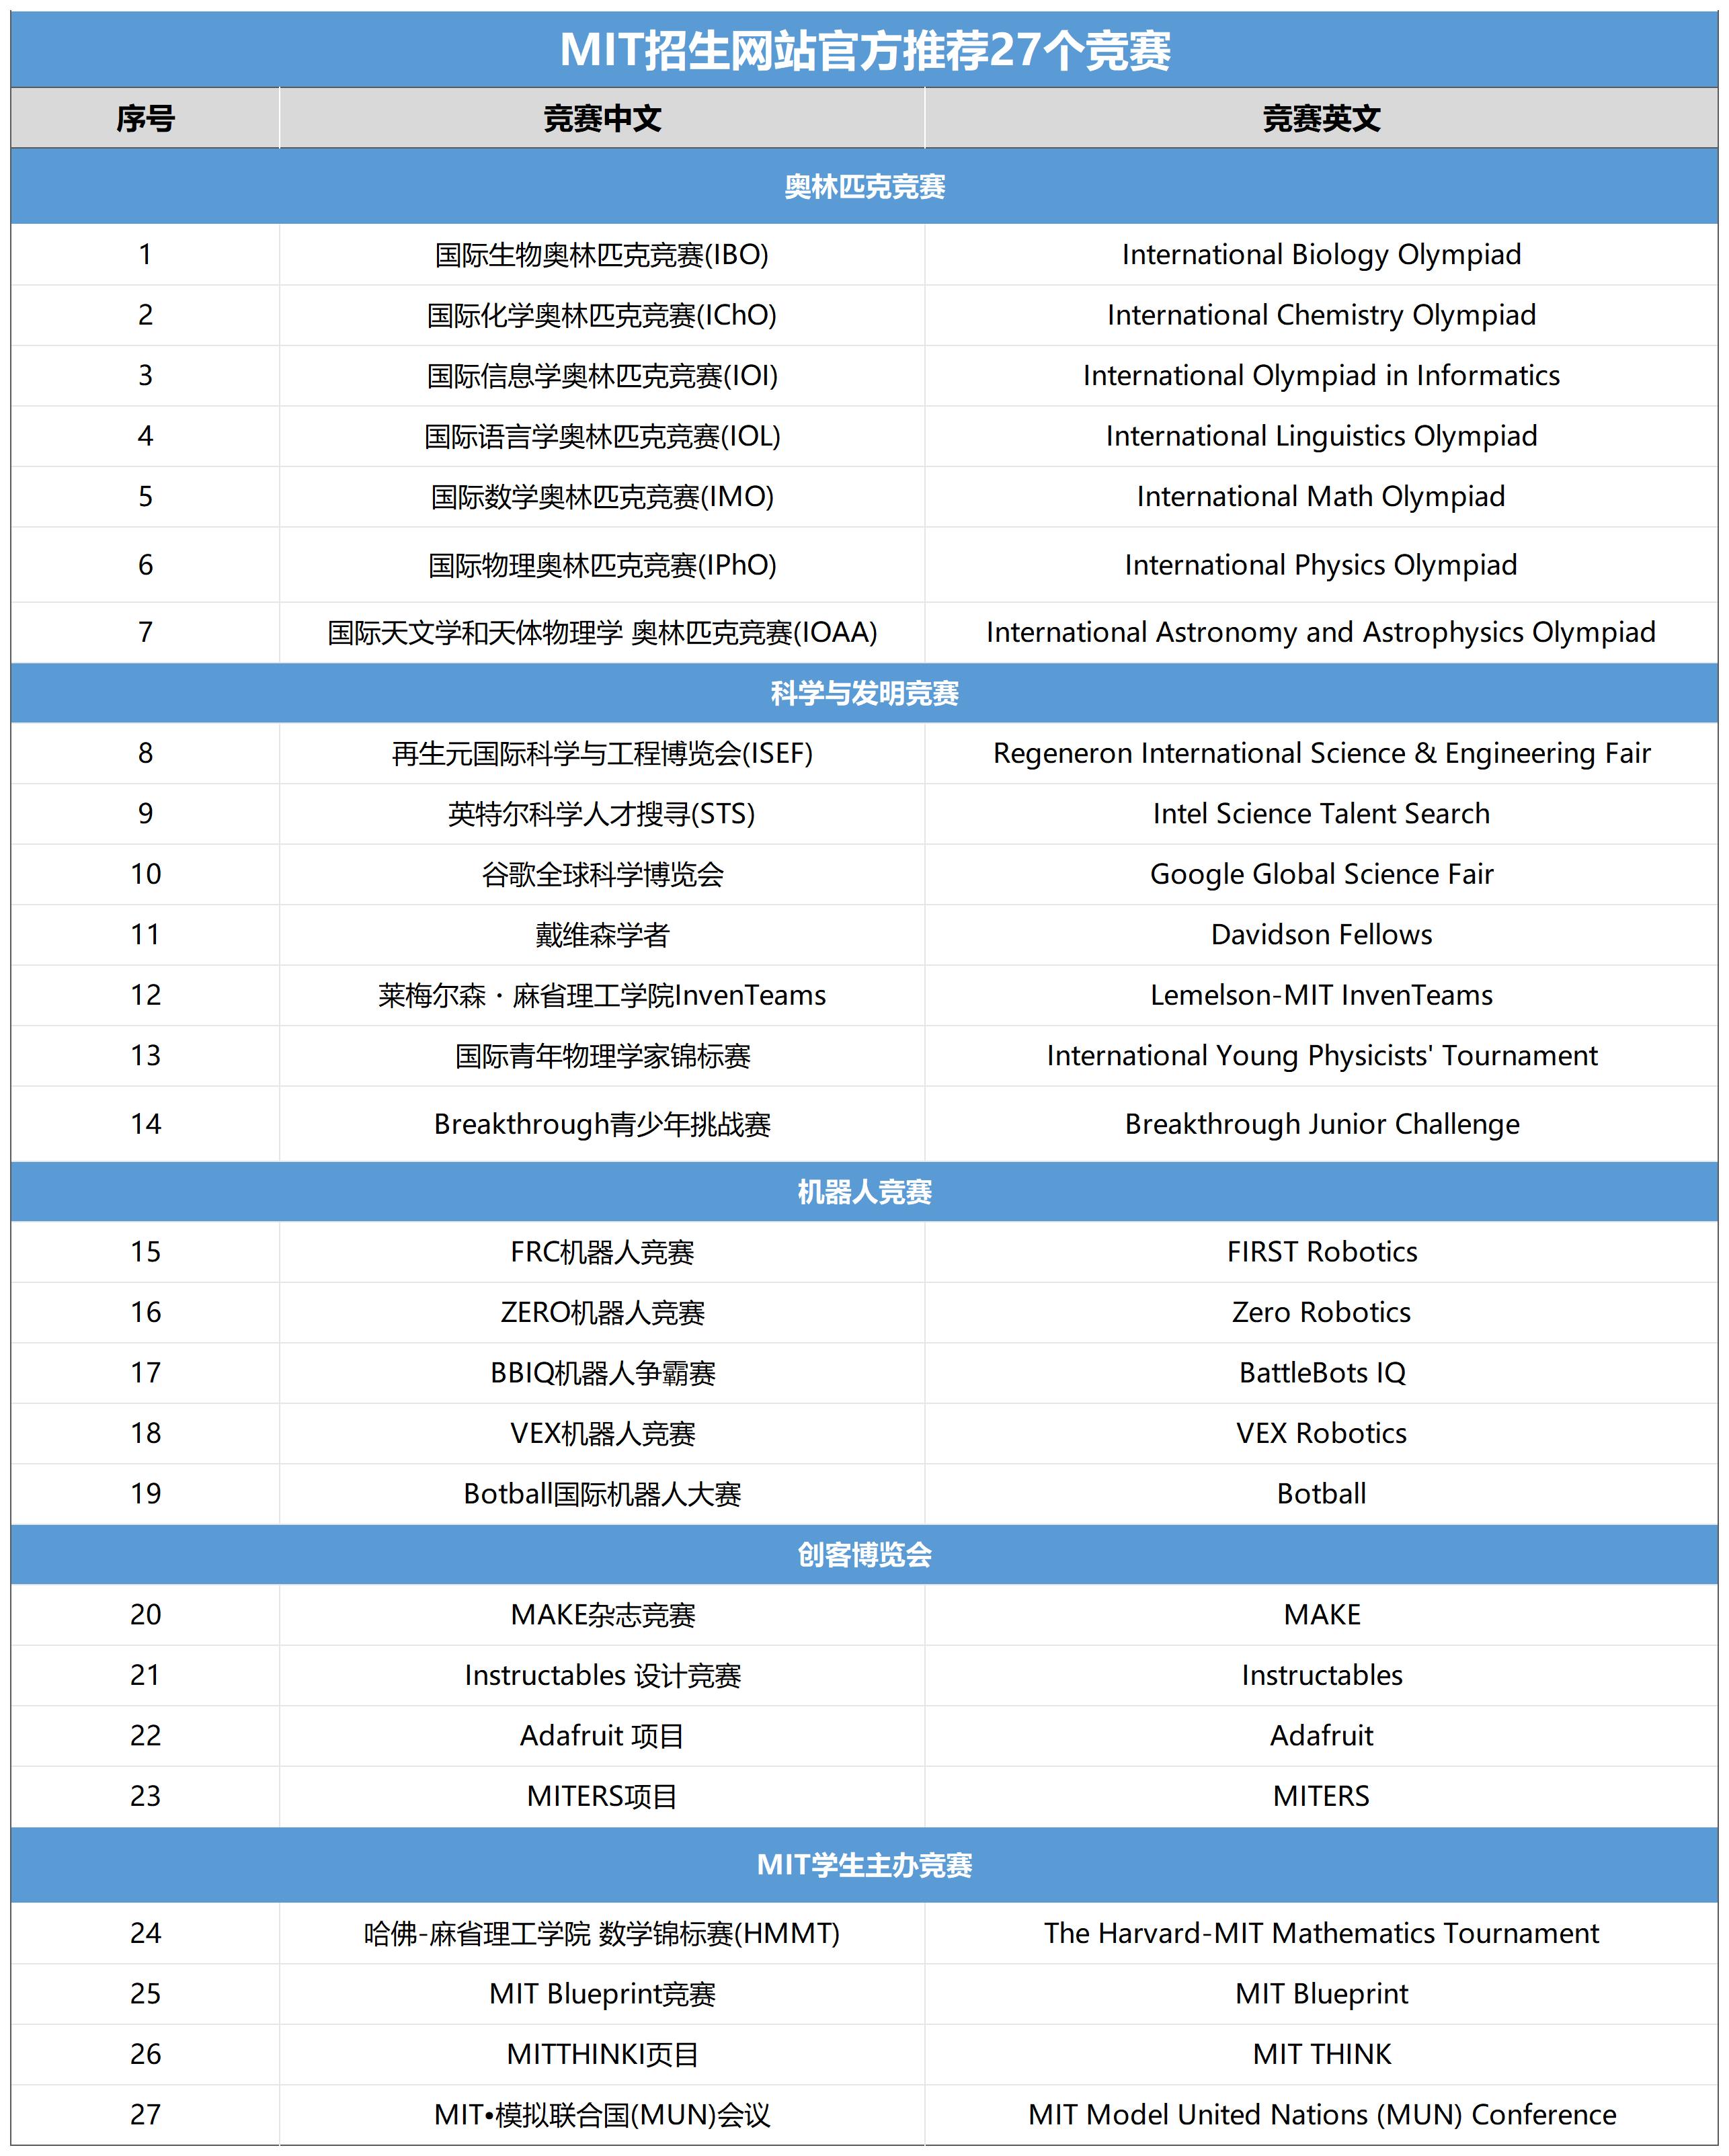 麻省理工招生网站官方推荐的27个竞赛